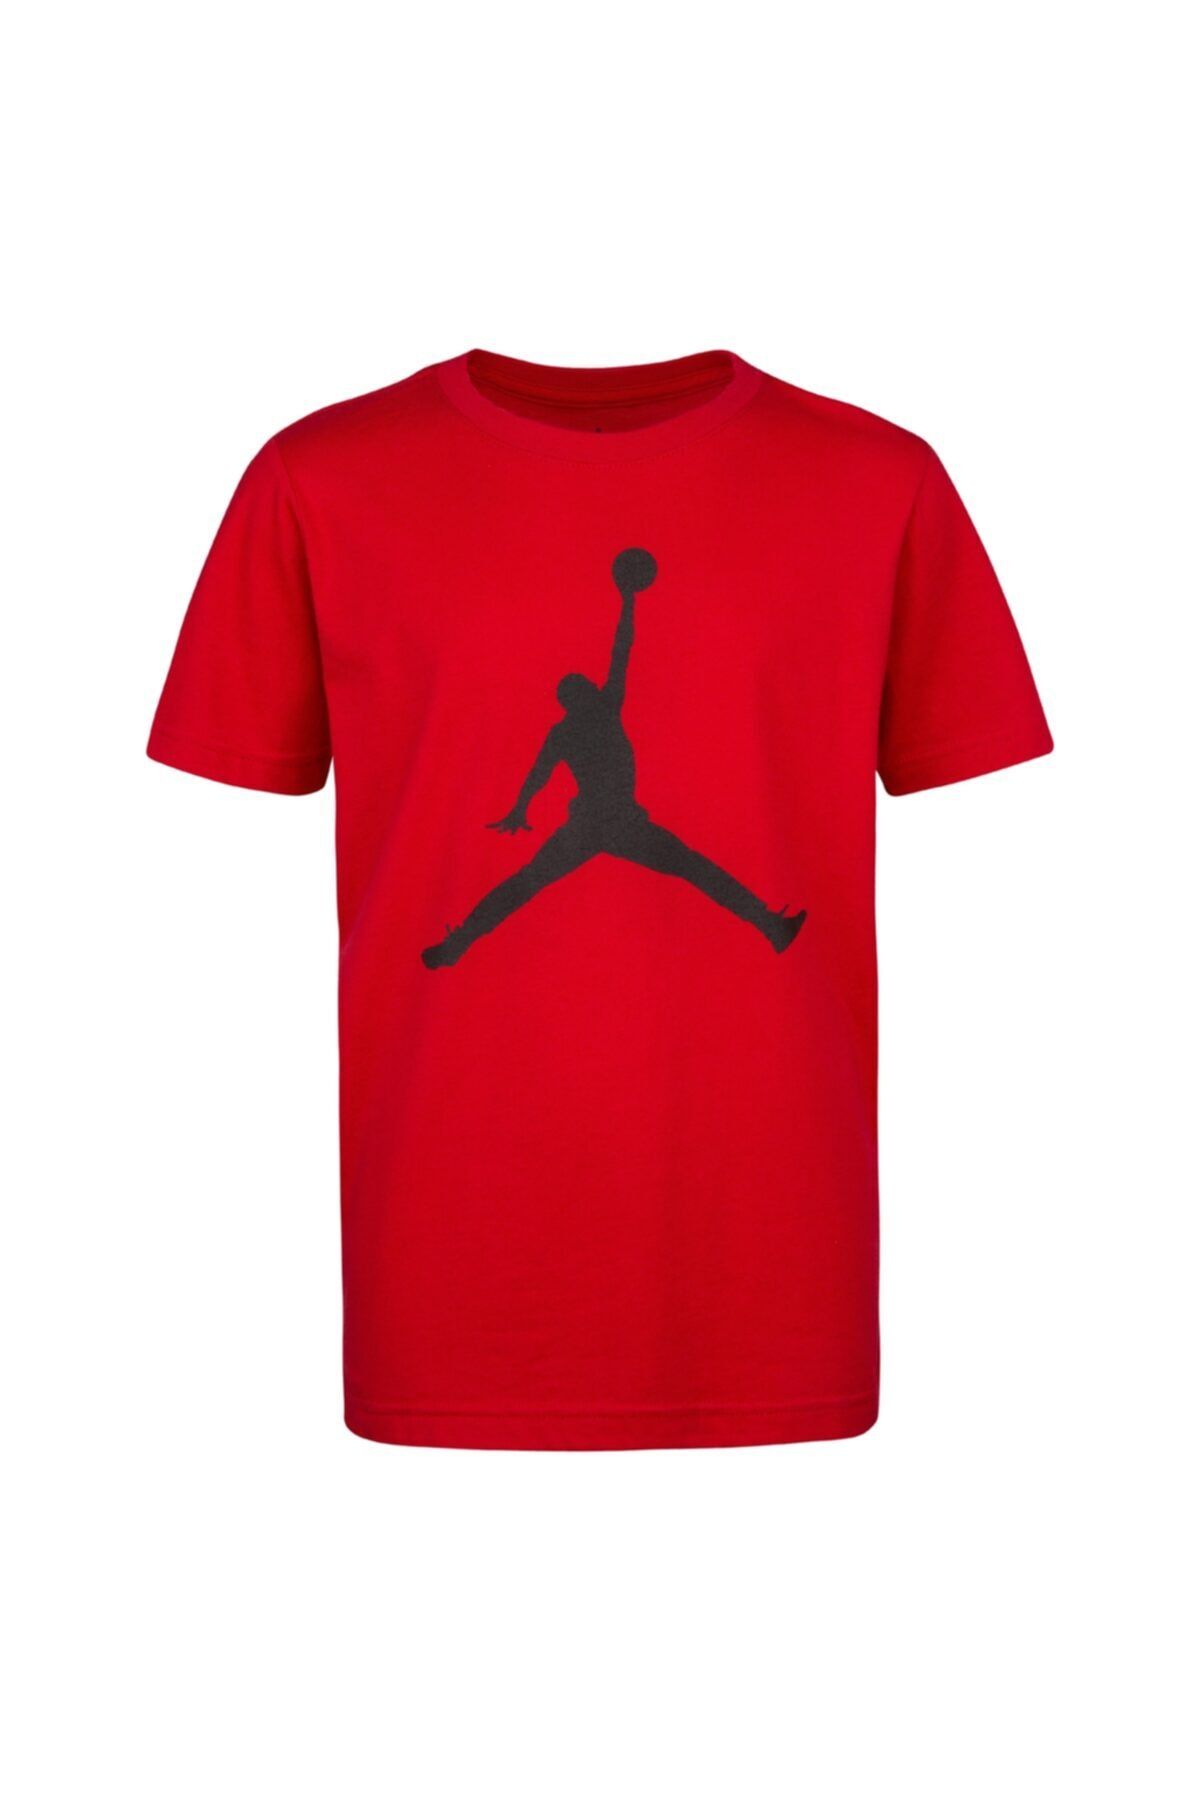 Nike Nıke Jordan Ss Jumpman Tee Çocuk T-shirt